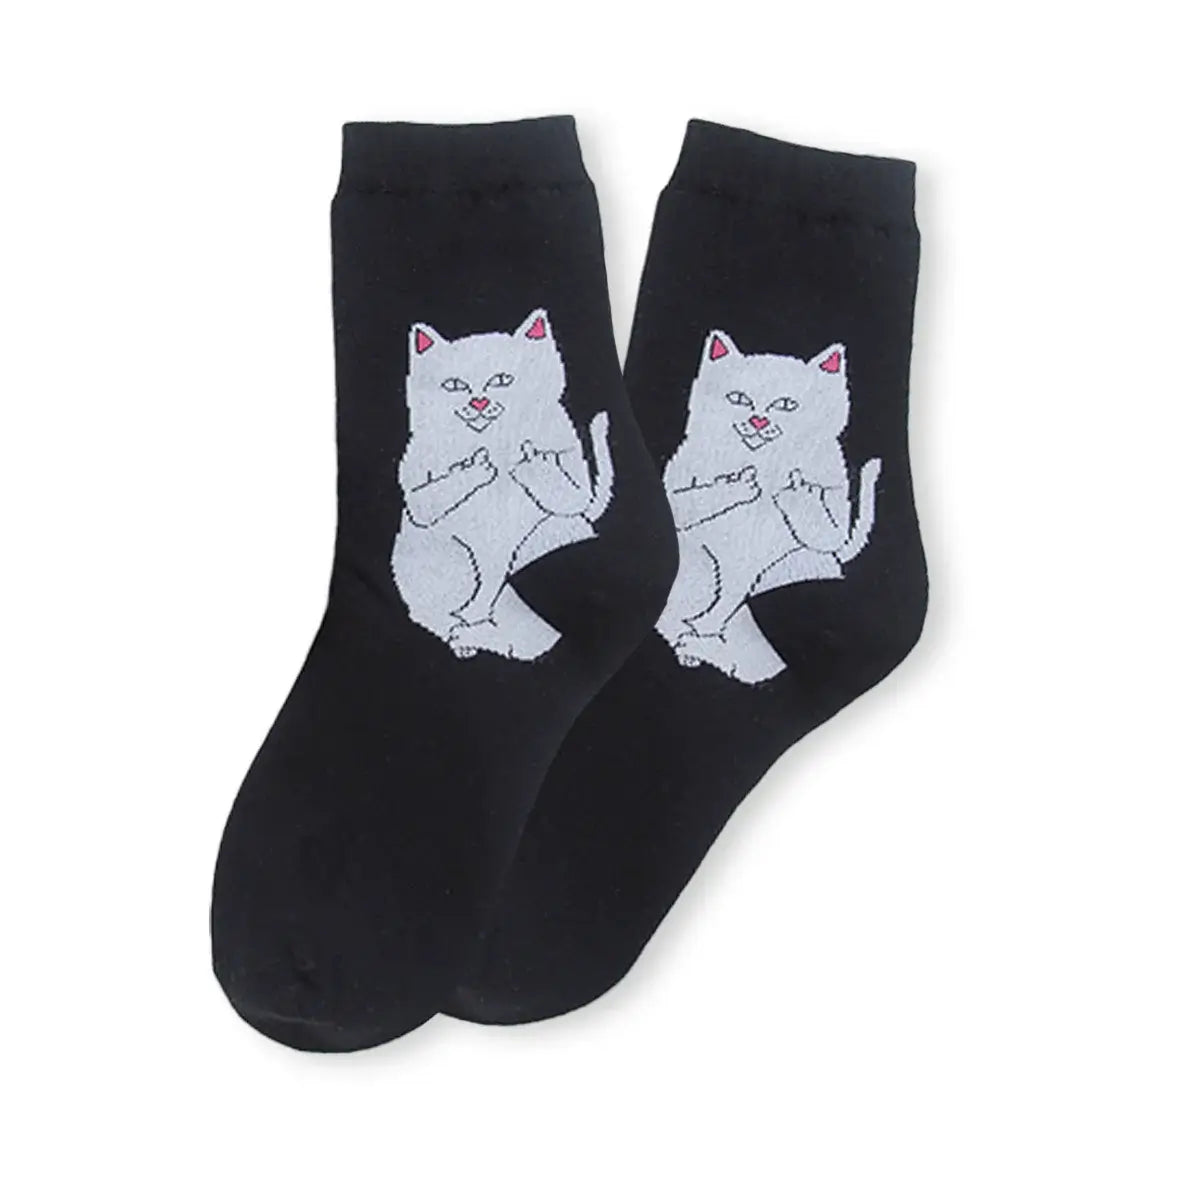 Chaussettes noir adultes en coton avec un chat rebelle | Chaussettes douces et respirantes | Un excellent choix pour les adultes qui aiment les chats et le style rebelle |